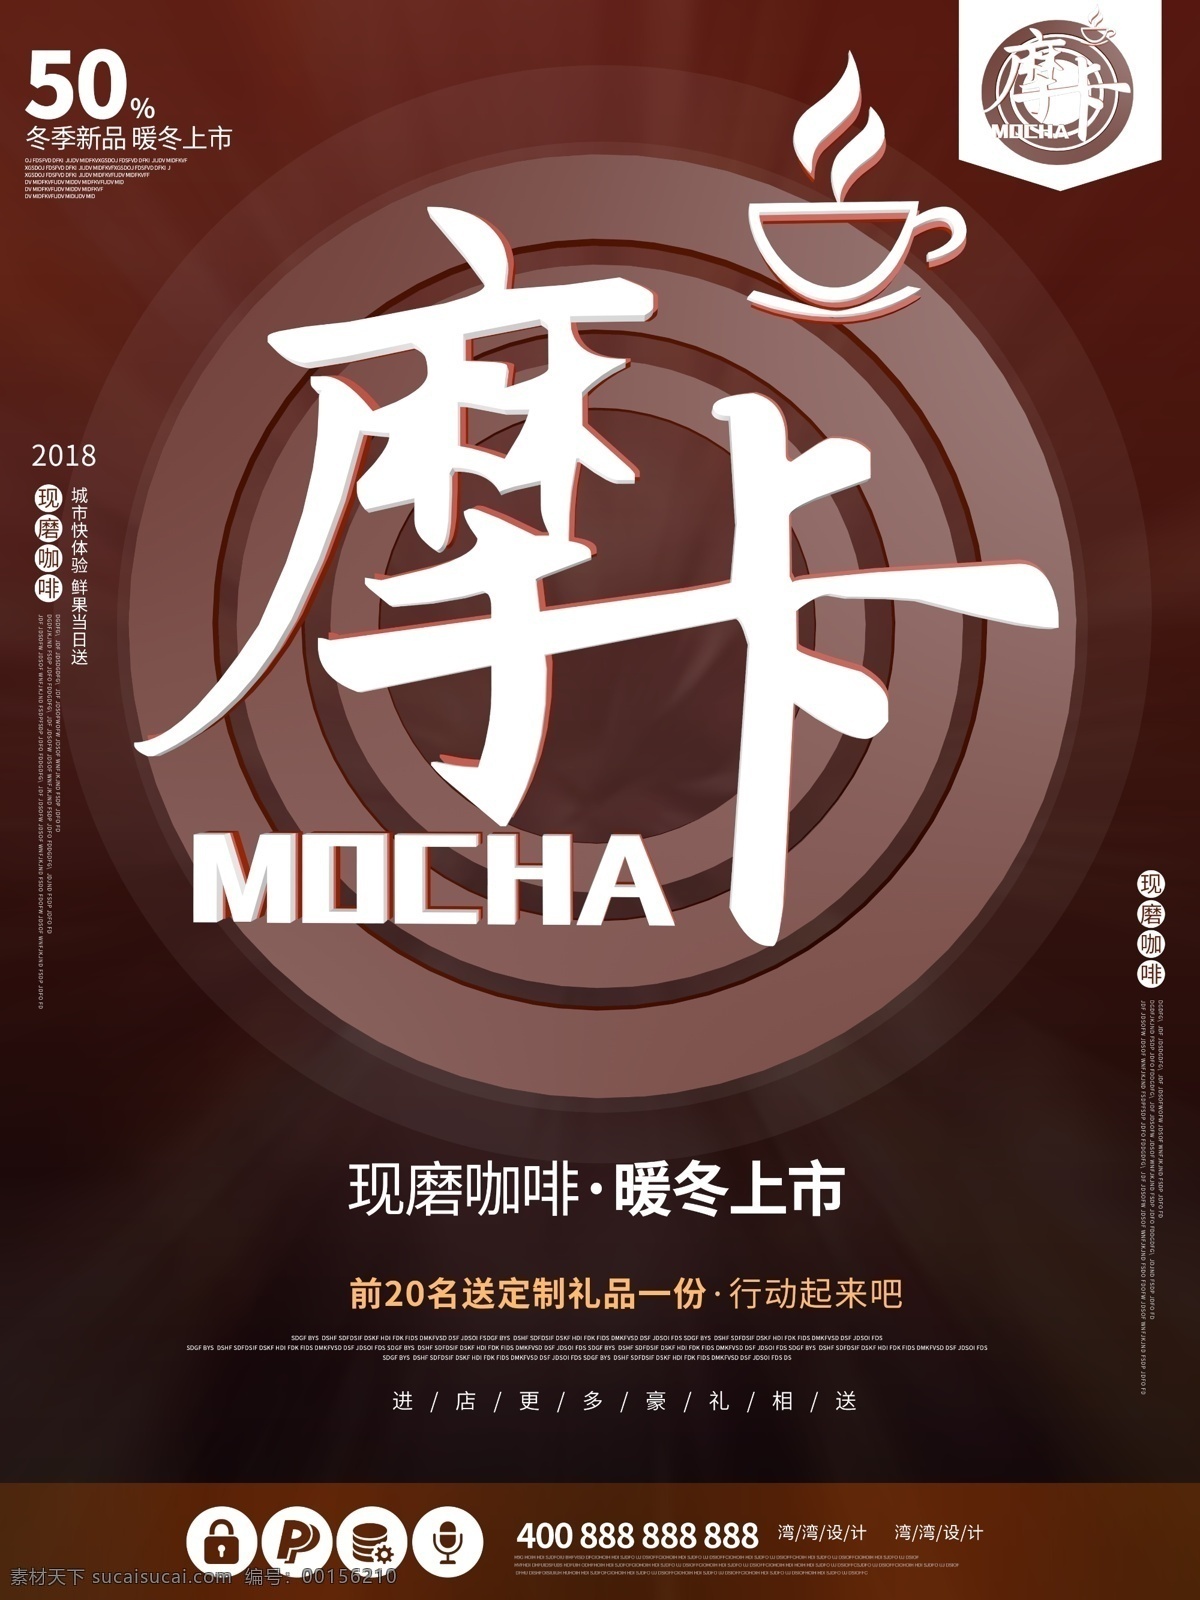 摩卡 卡布 奇诺 促销 咖啡 c4d 创意 原创 海报 饮料 餐饮 咖啡色 卡布奇诺